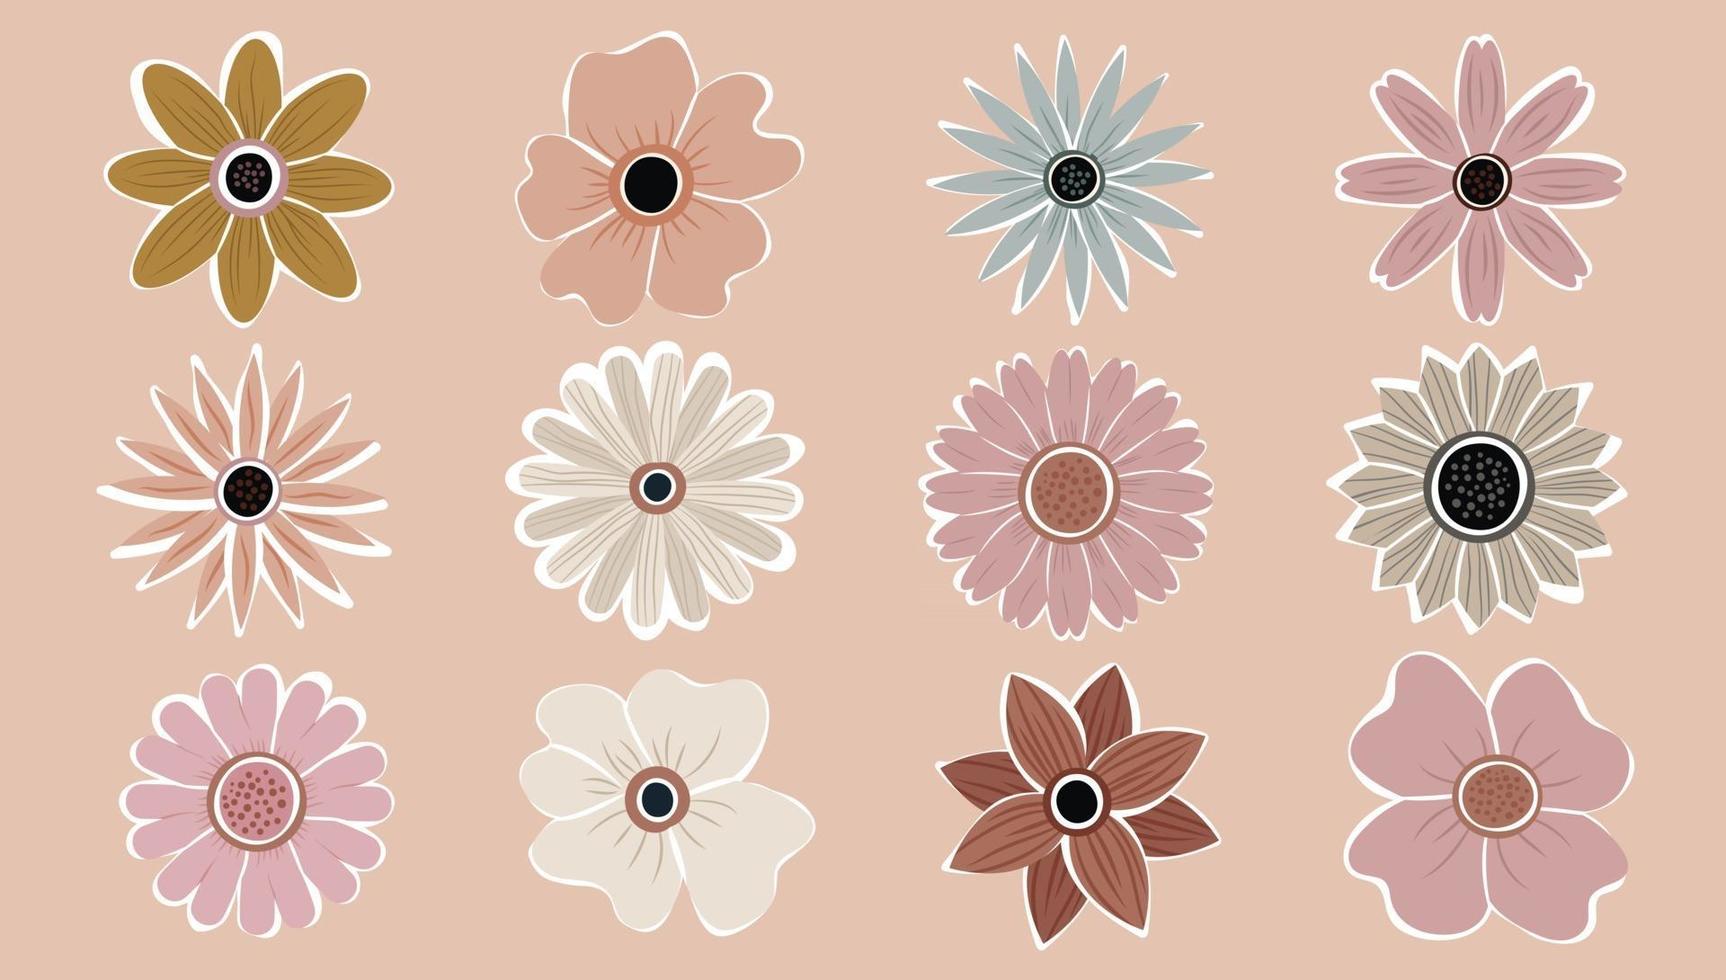 fiore semplice astratto disegnato a mano varie forme set di fiori di campo. natura botanica fiori oggetti vettore moderno alla moda contemporaneo. raccolta di illustrazione di elementi.